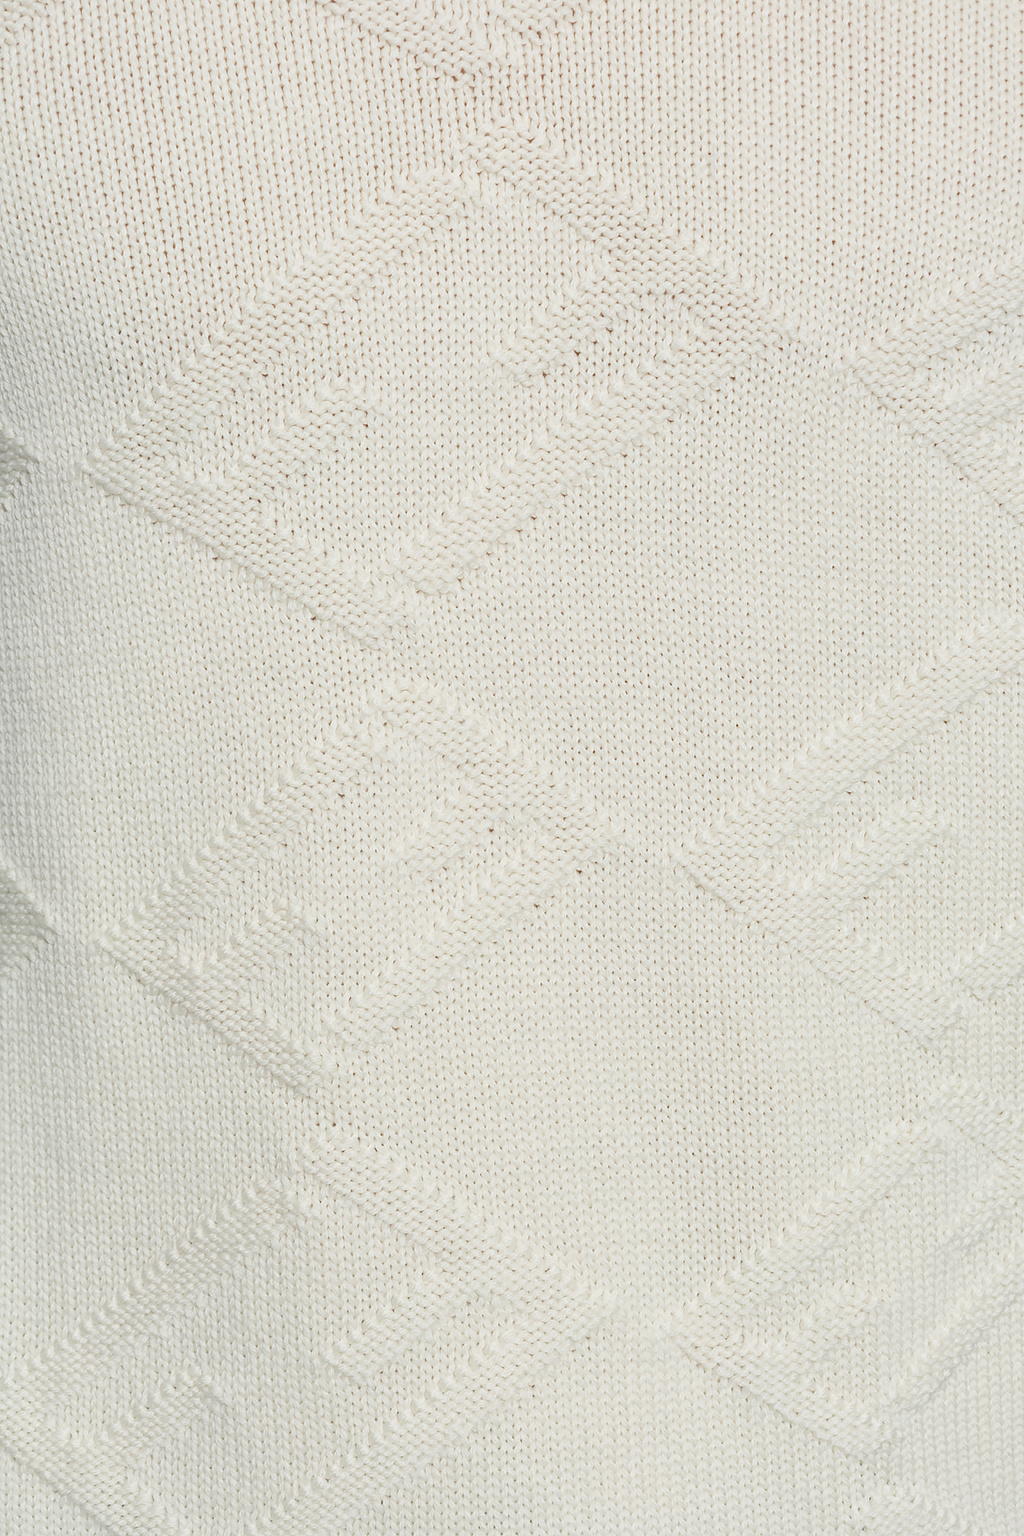 Fendi fendi pre owned 1990s zucca pattern cosmetic bag item